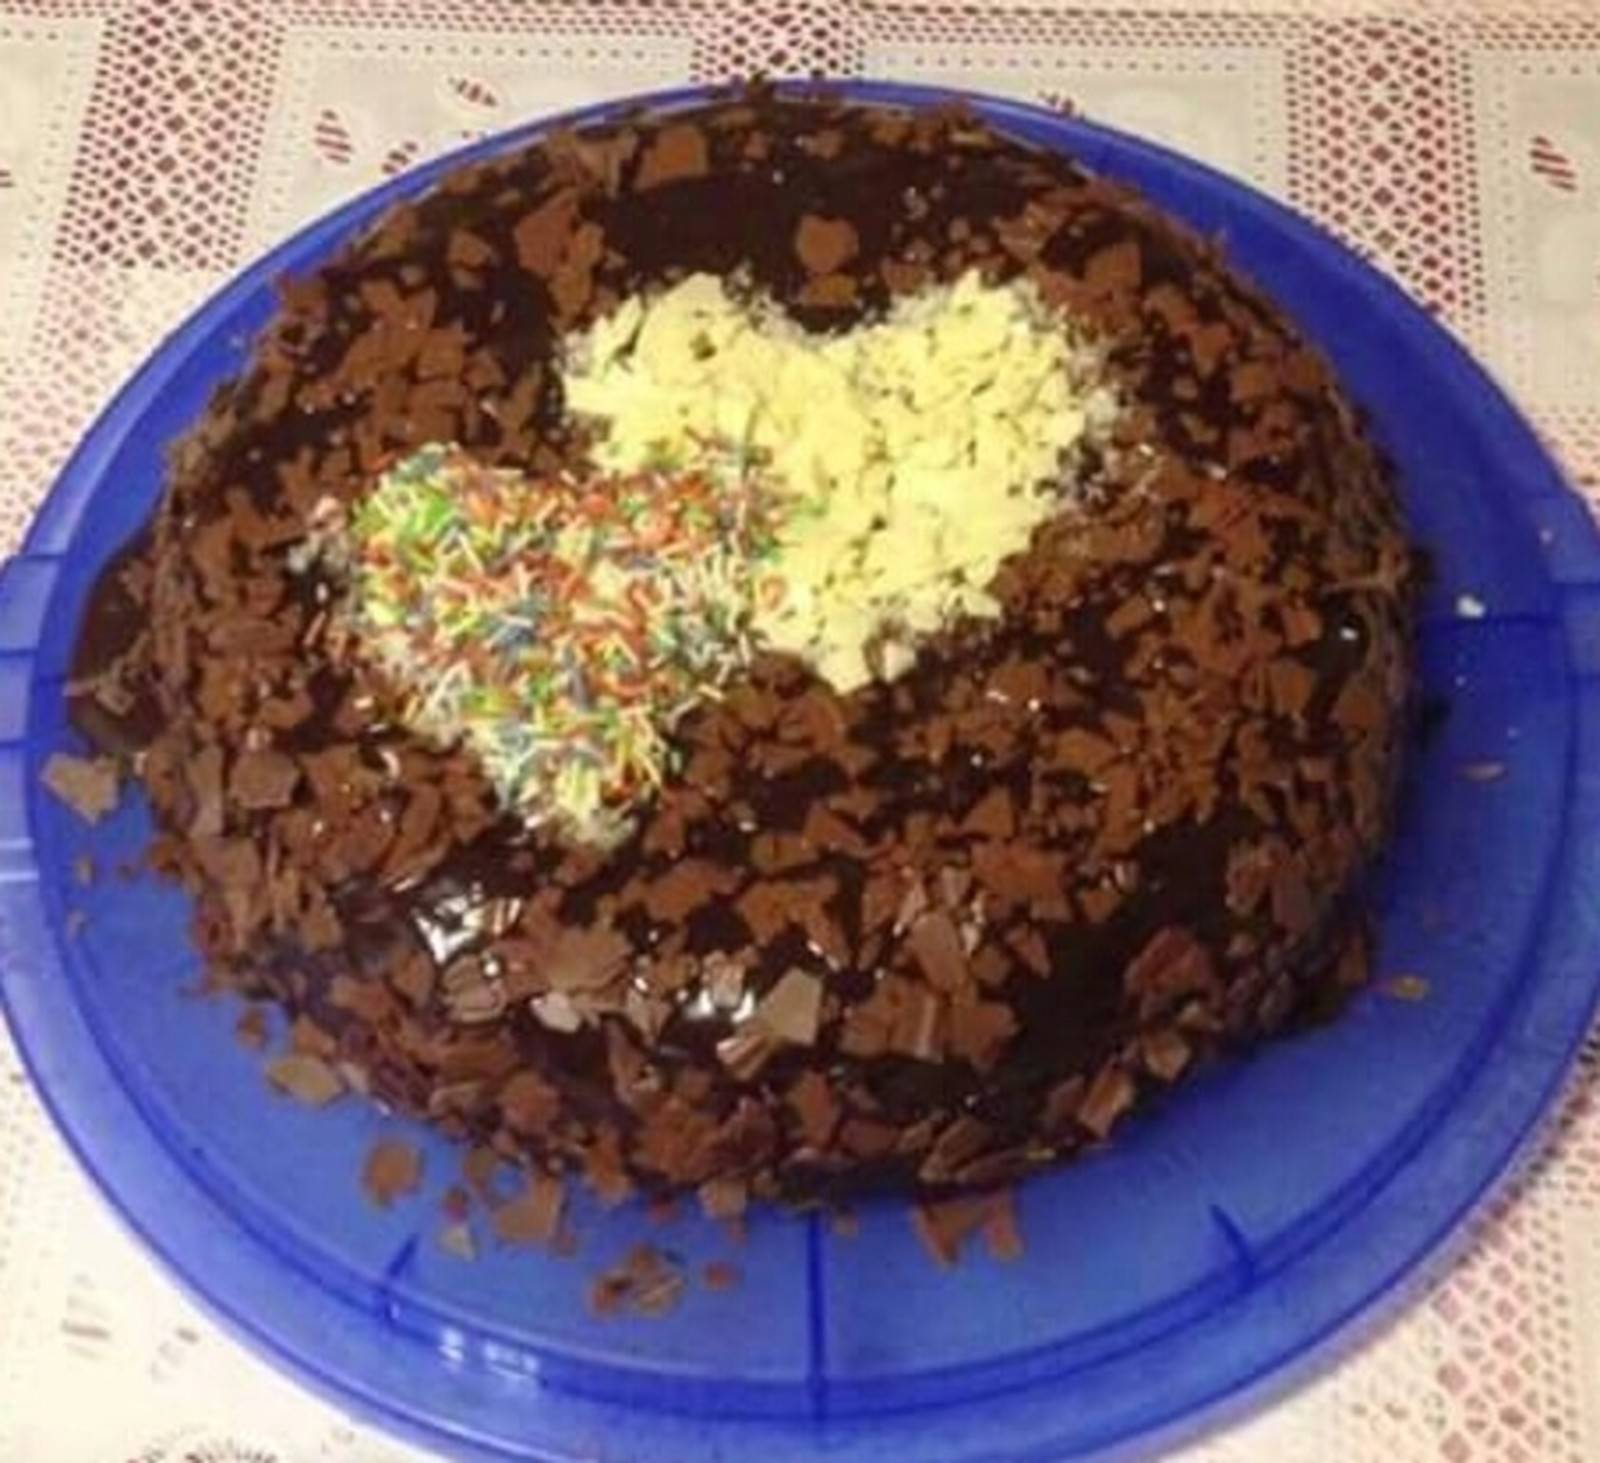 Schokolade-Buttermilch Torte